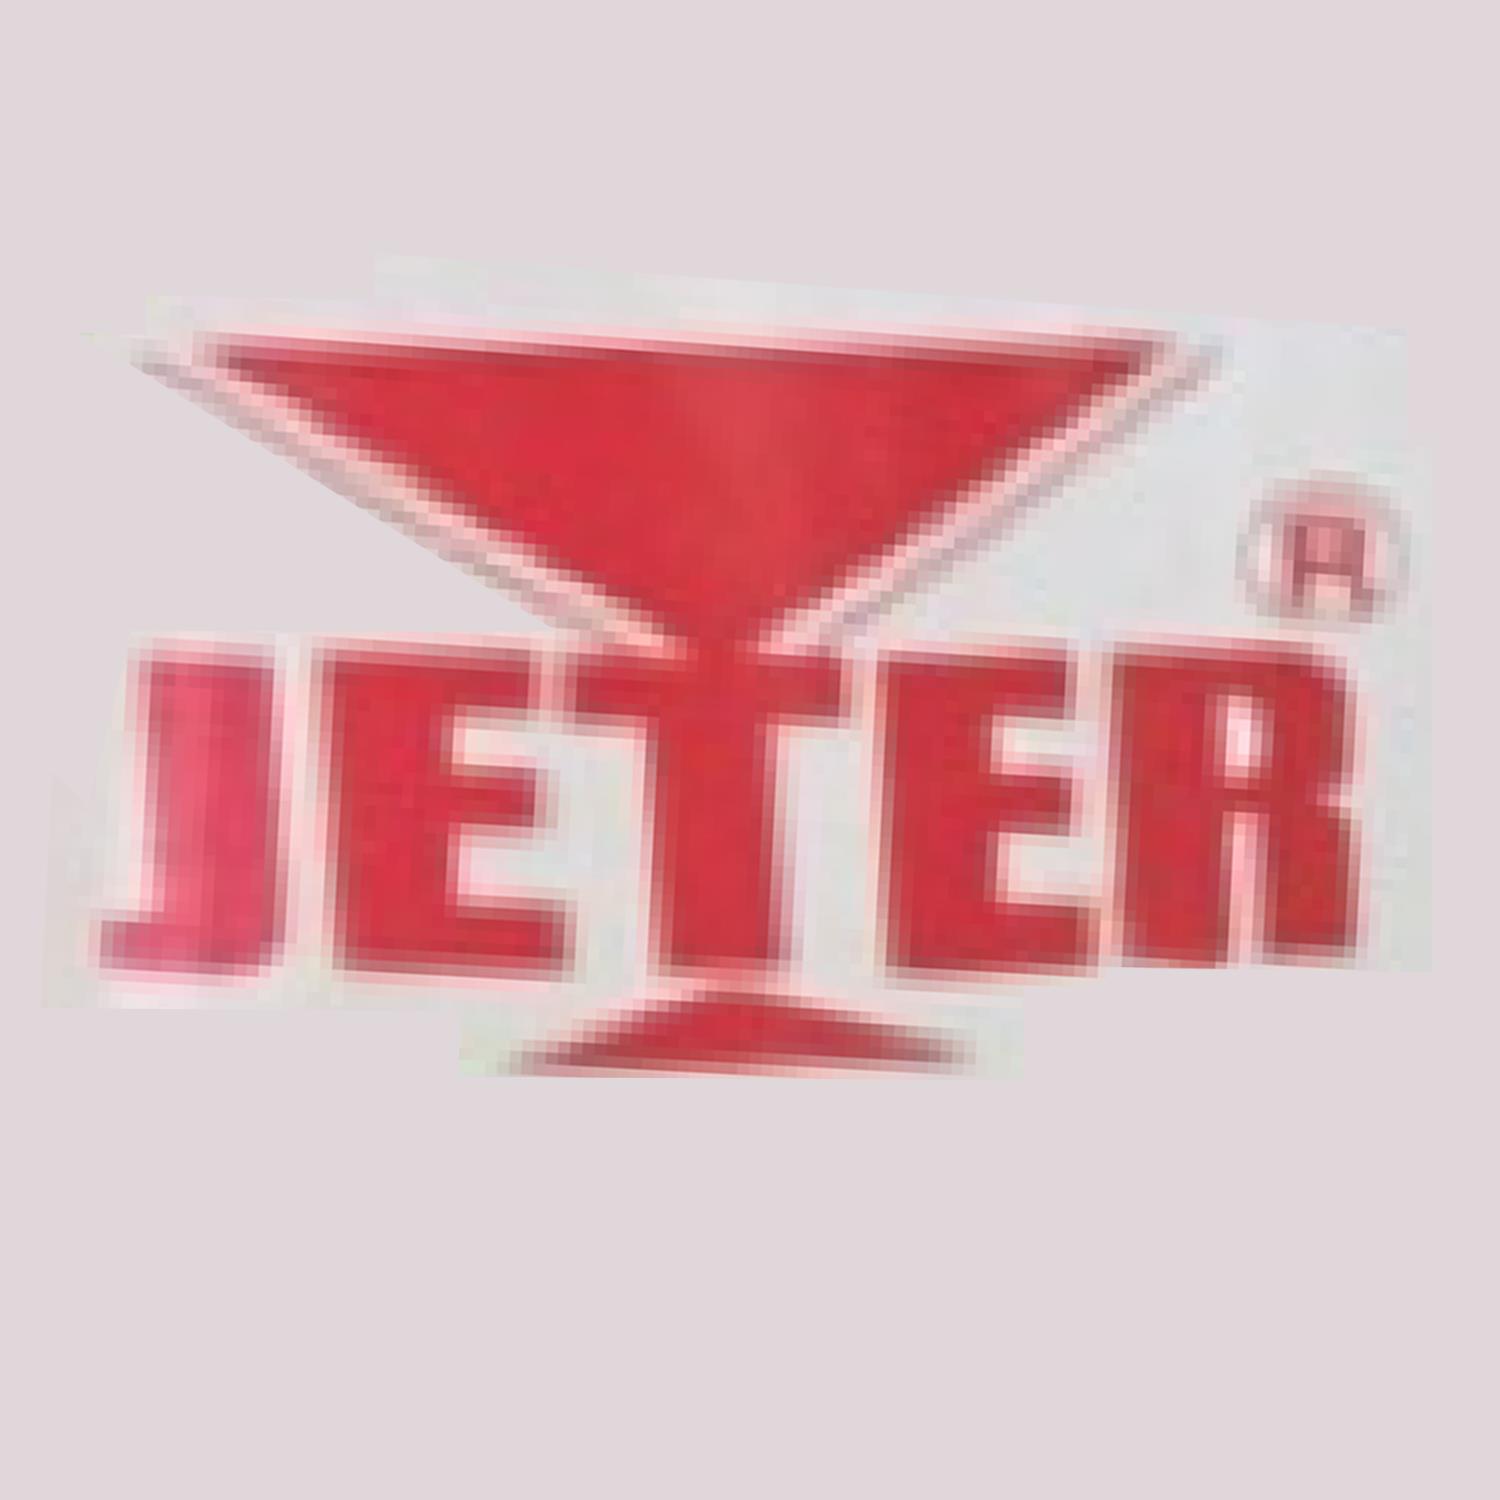 吉特 Jeter